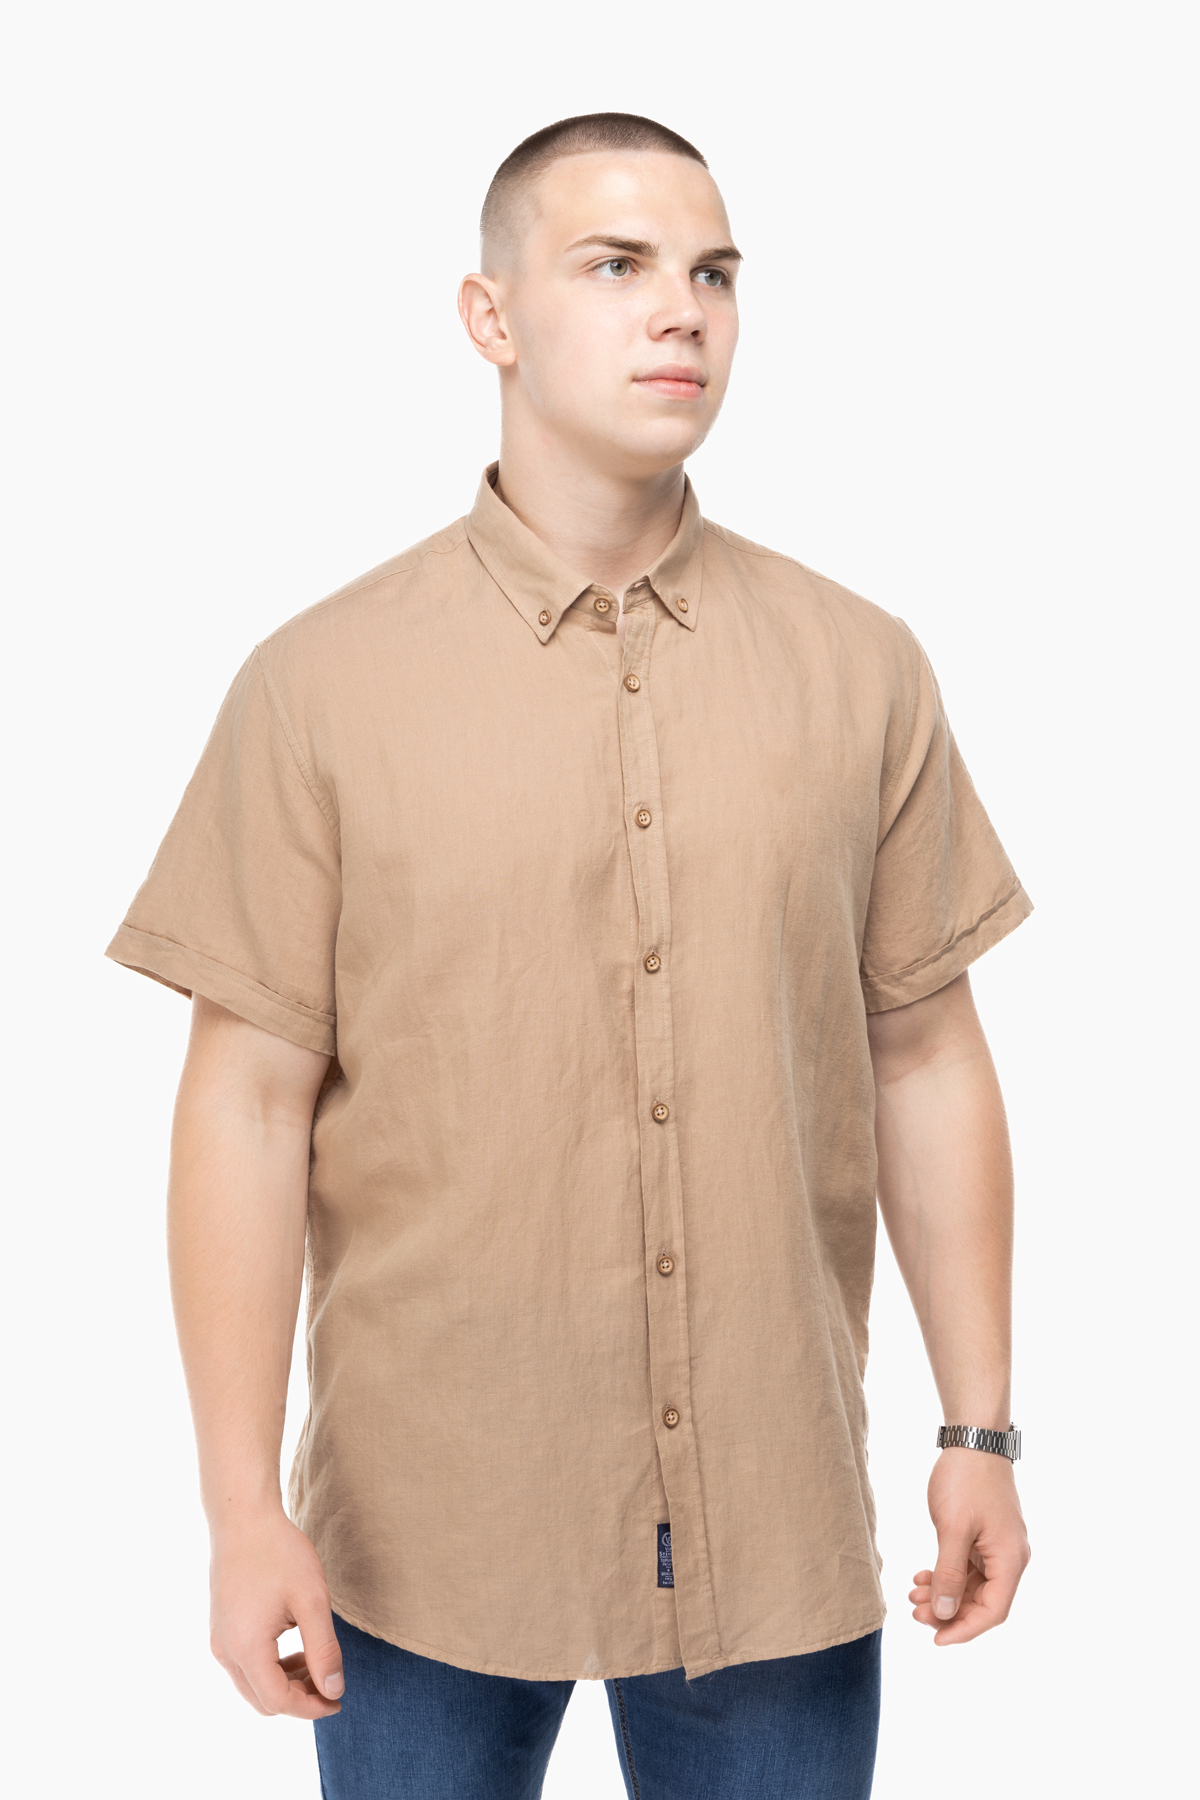 Рубашка классическая однотонная мужская Stendo 14215 3XL Бежевый (2000989628491)